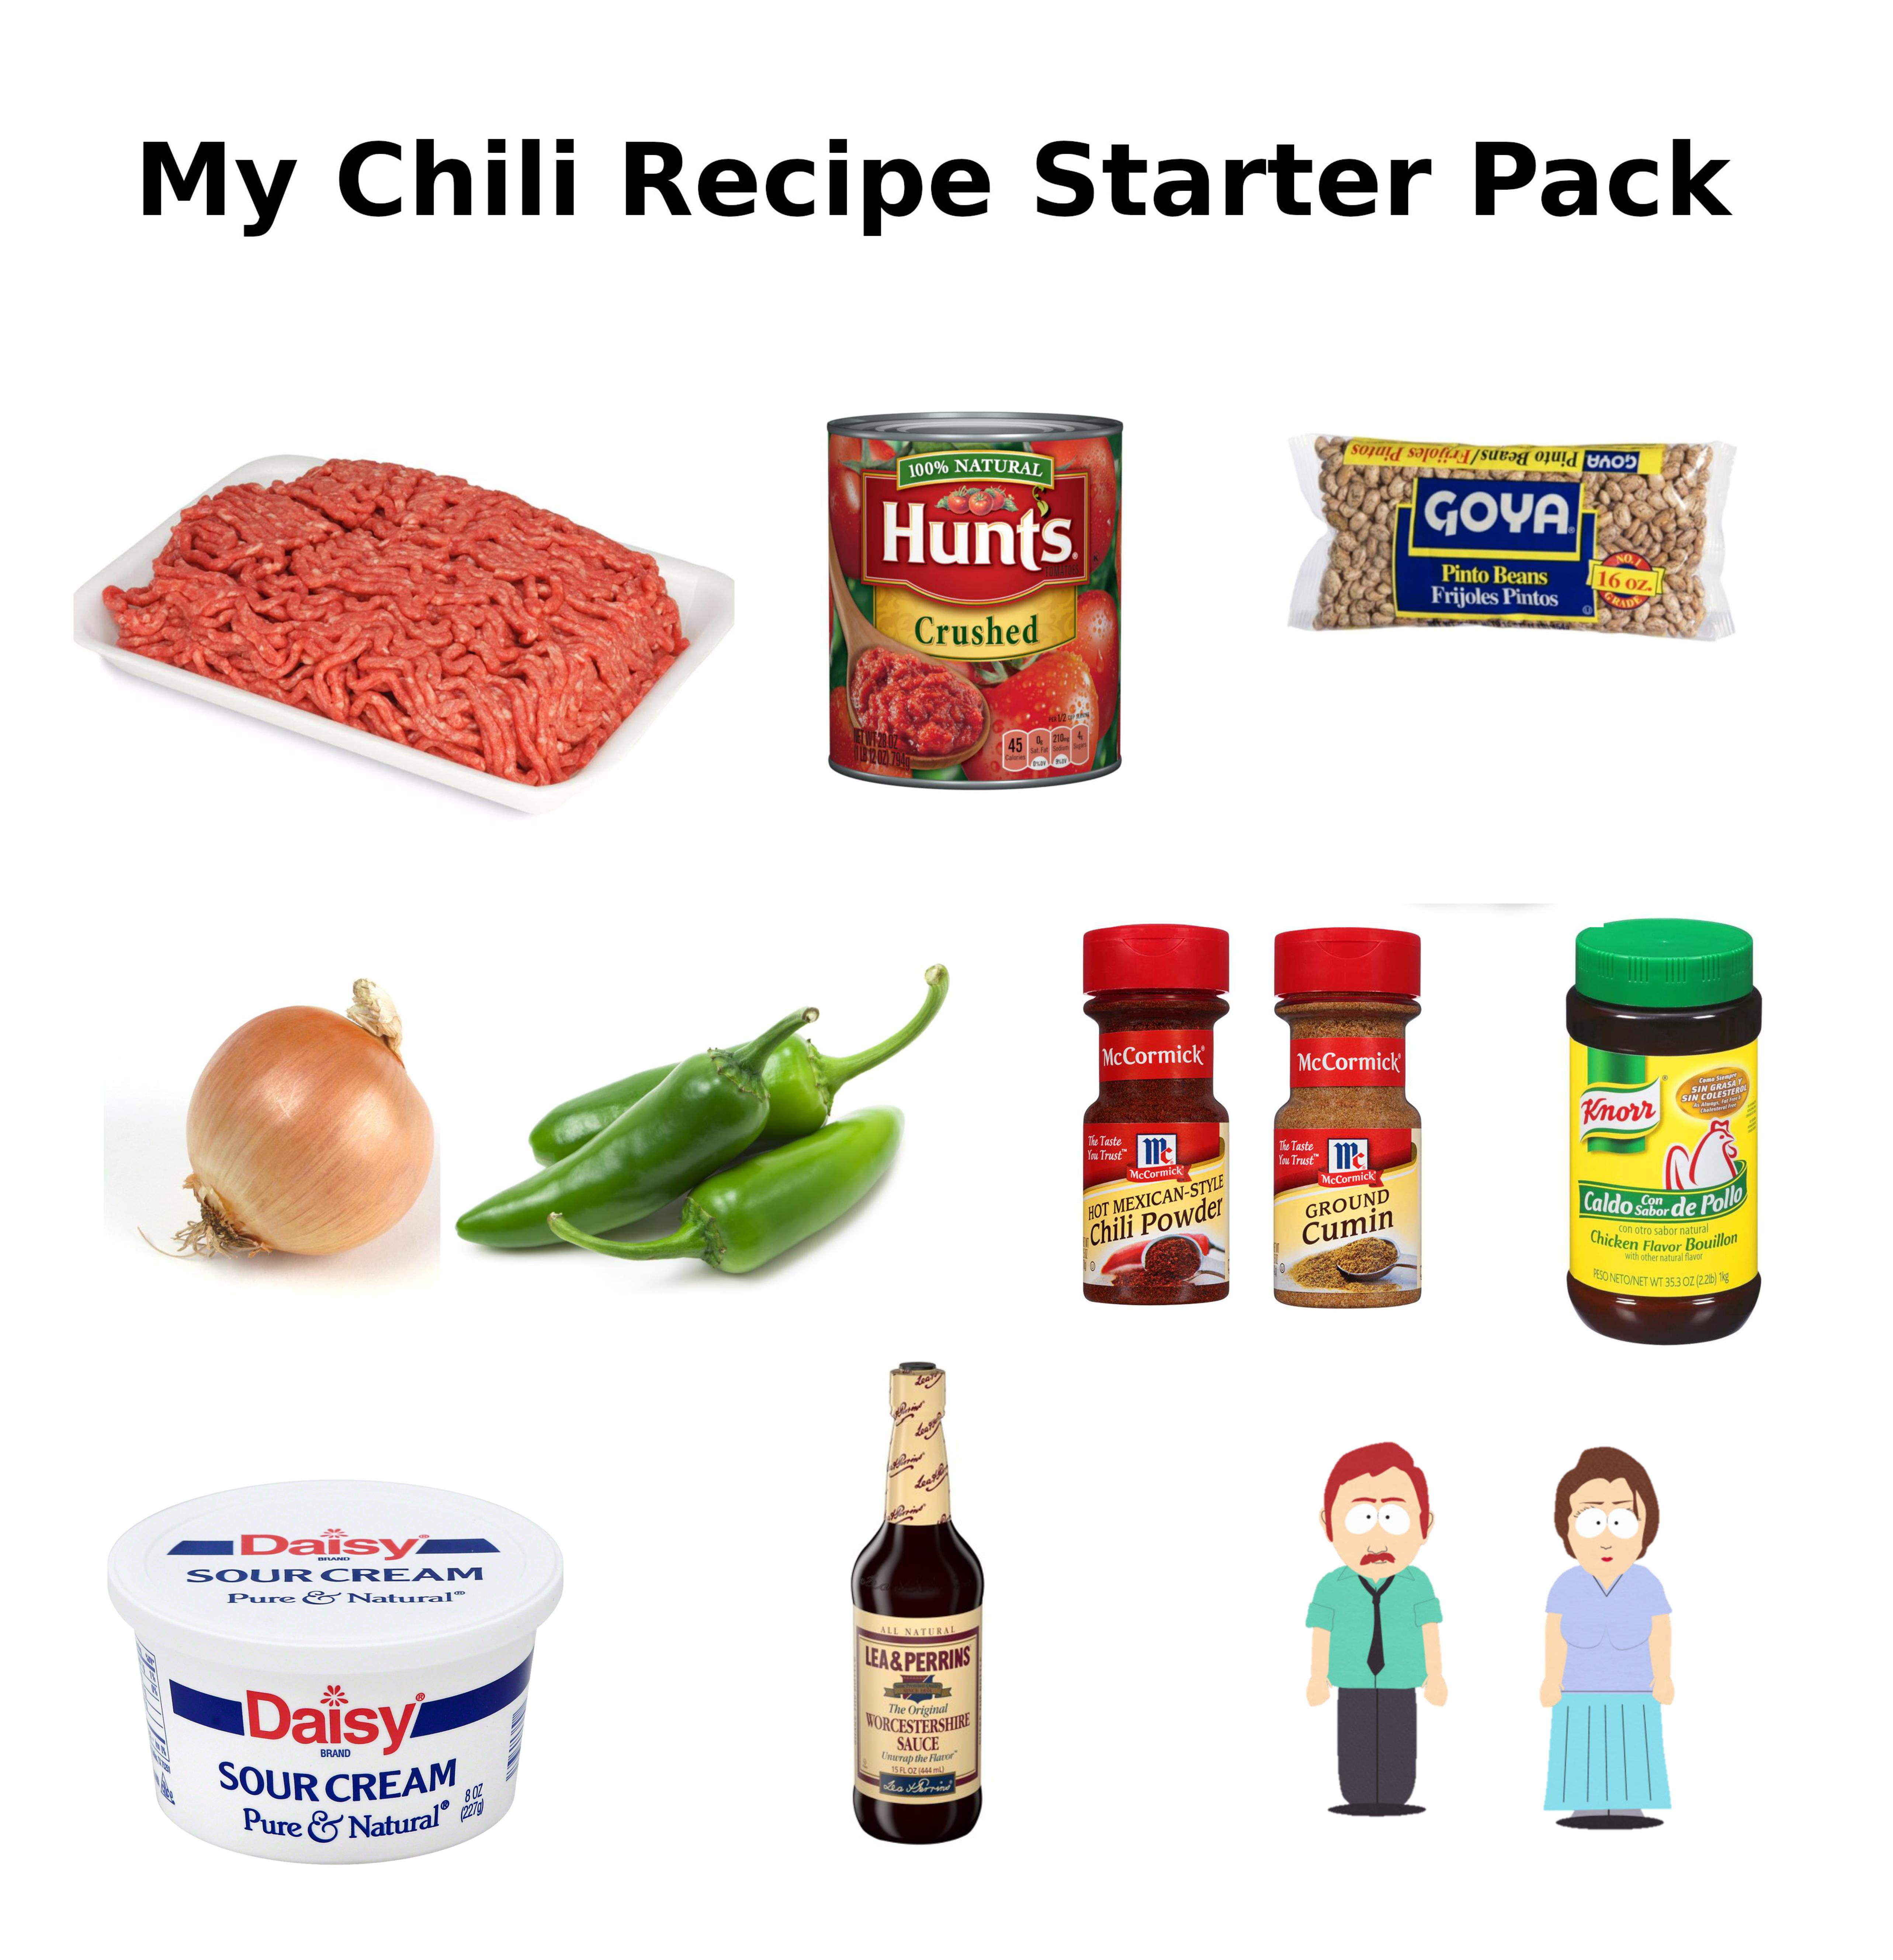 Starter Pack Meme - My Chili Recipe Starter Pack Hunt's Goya Crushed Day Daisy. Sour Cream Nural